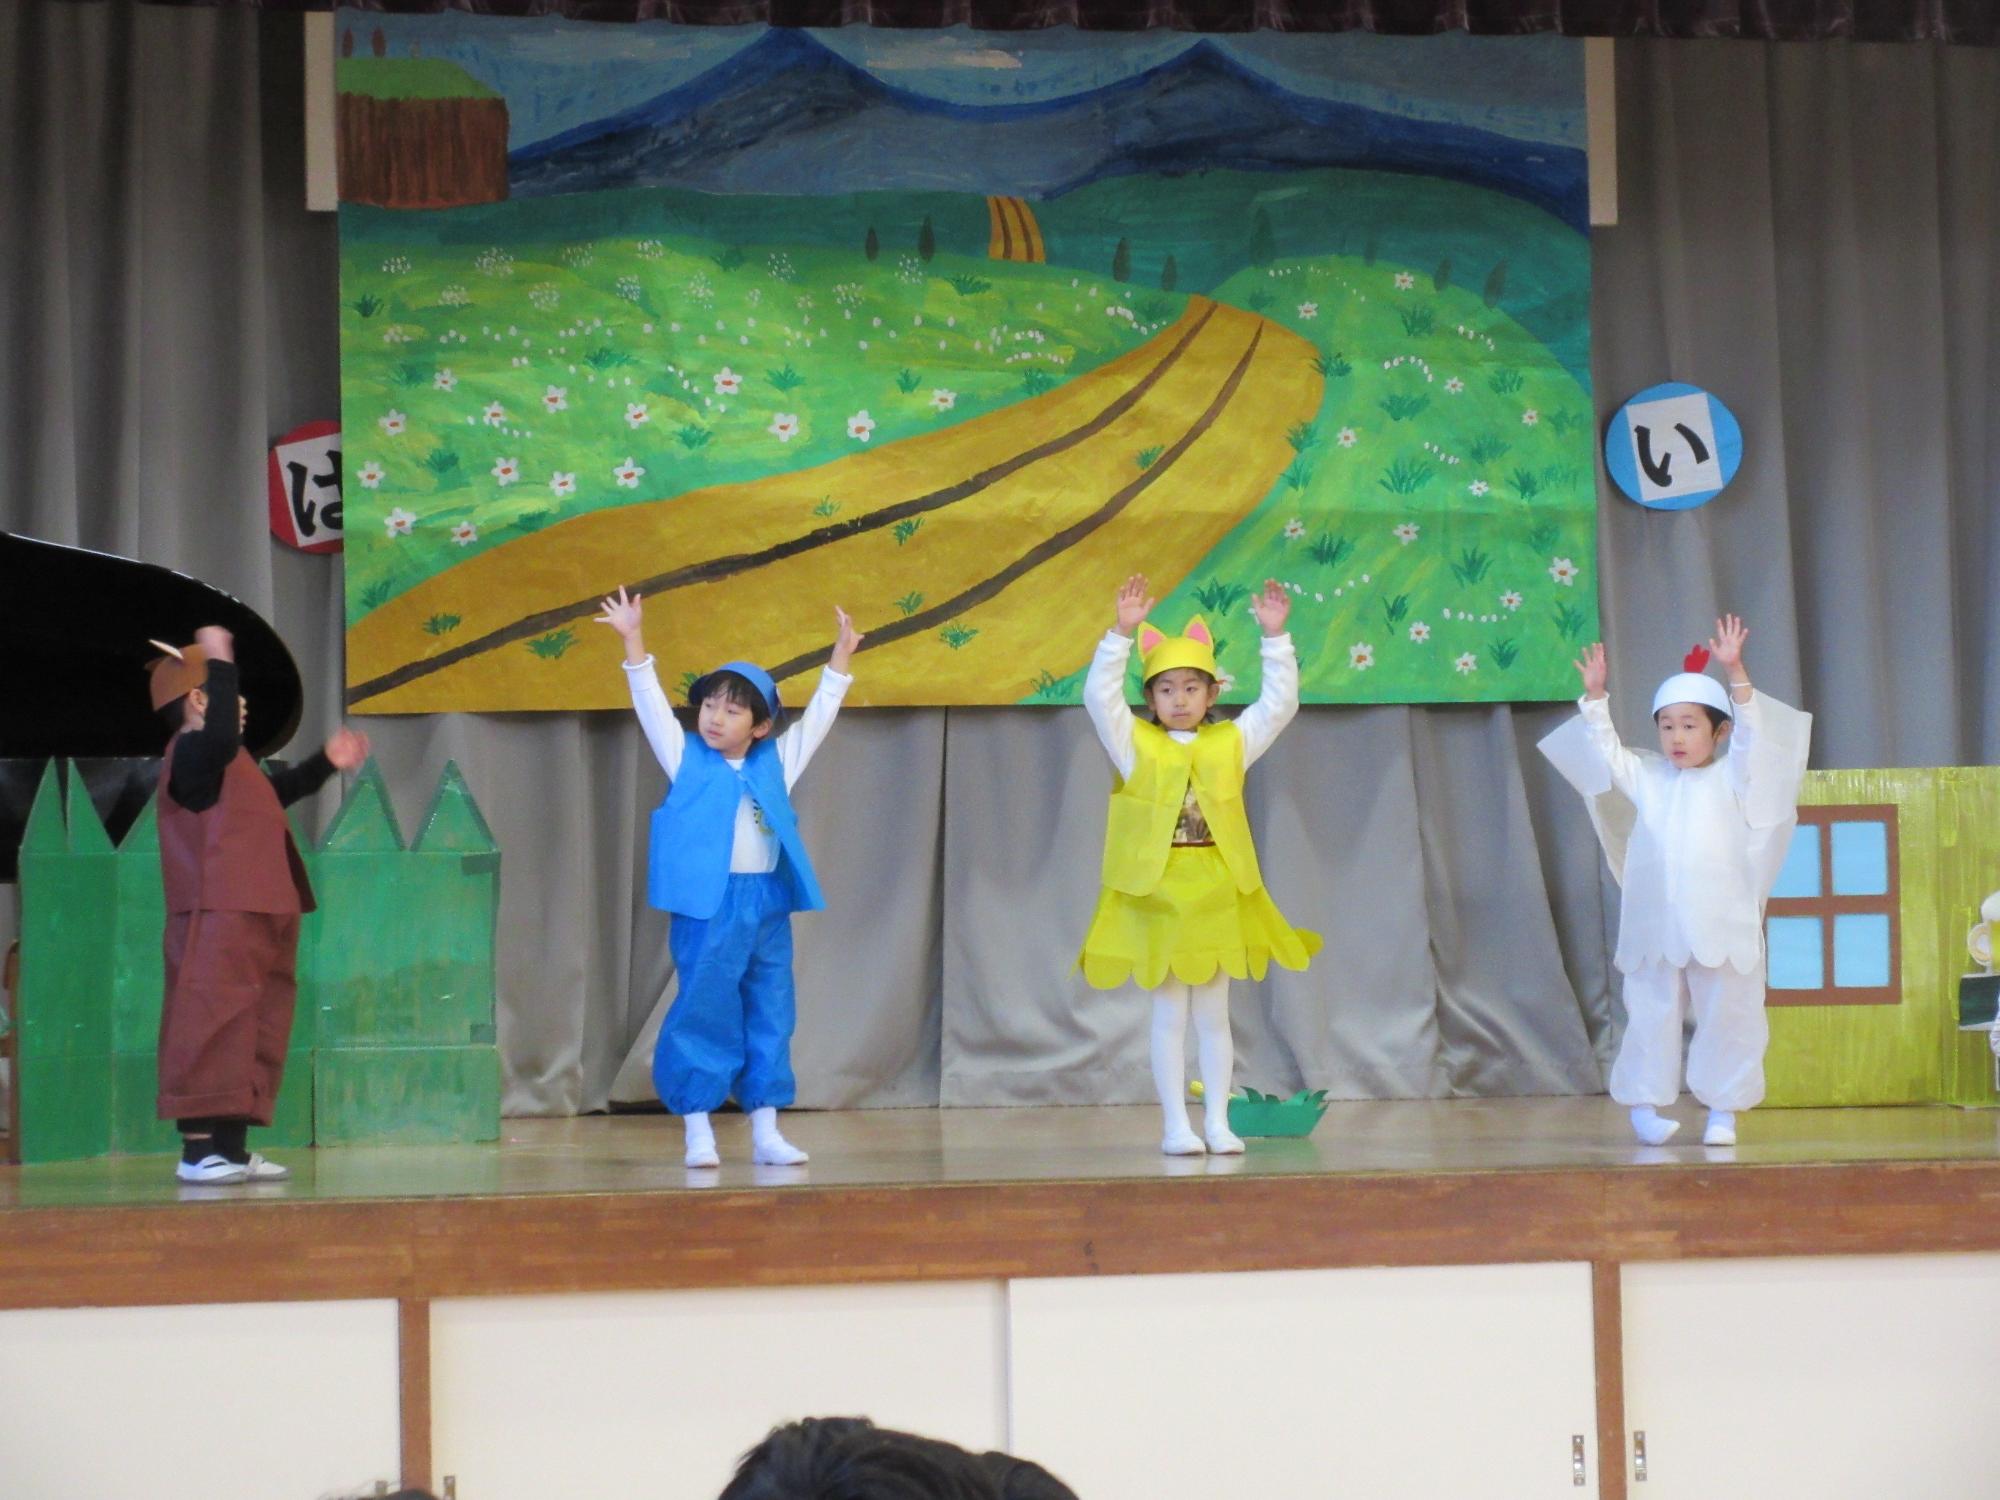 ロバ・イヌ・ネコ・ニワトリの格好をした園児が舞台上に並んで、両手を上げている写真